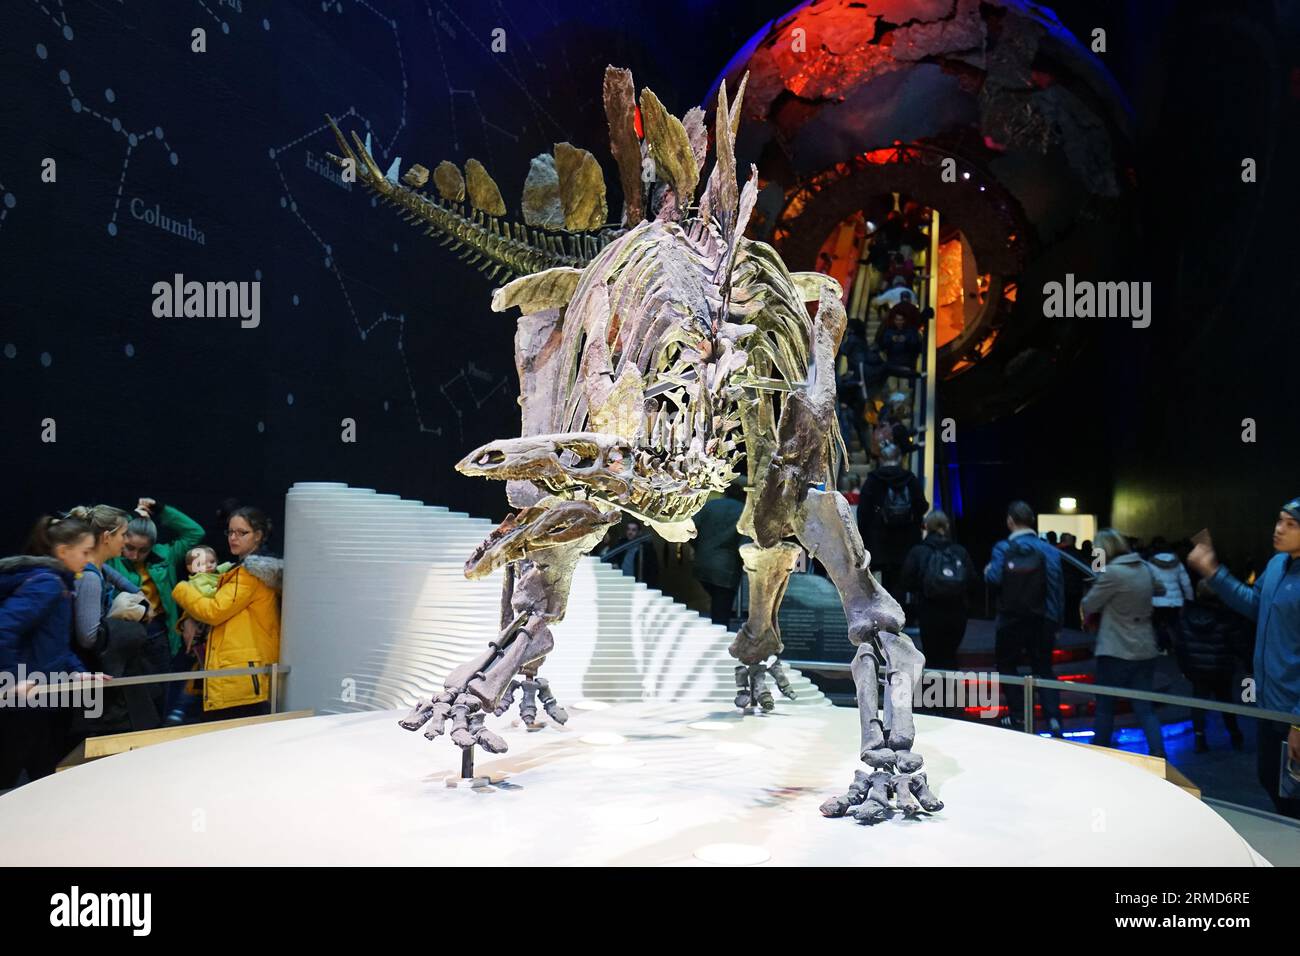 Détails et conception du squelette de dinosaure Stegosaurus nommé Sophie au musée d'histoire naturelle, le centre de collections d'excellence en taxonomie- Royaume-Uni Banque D'Images